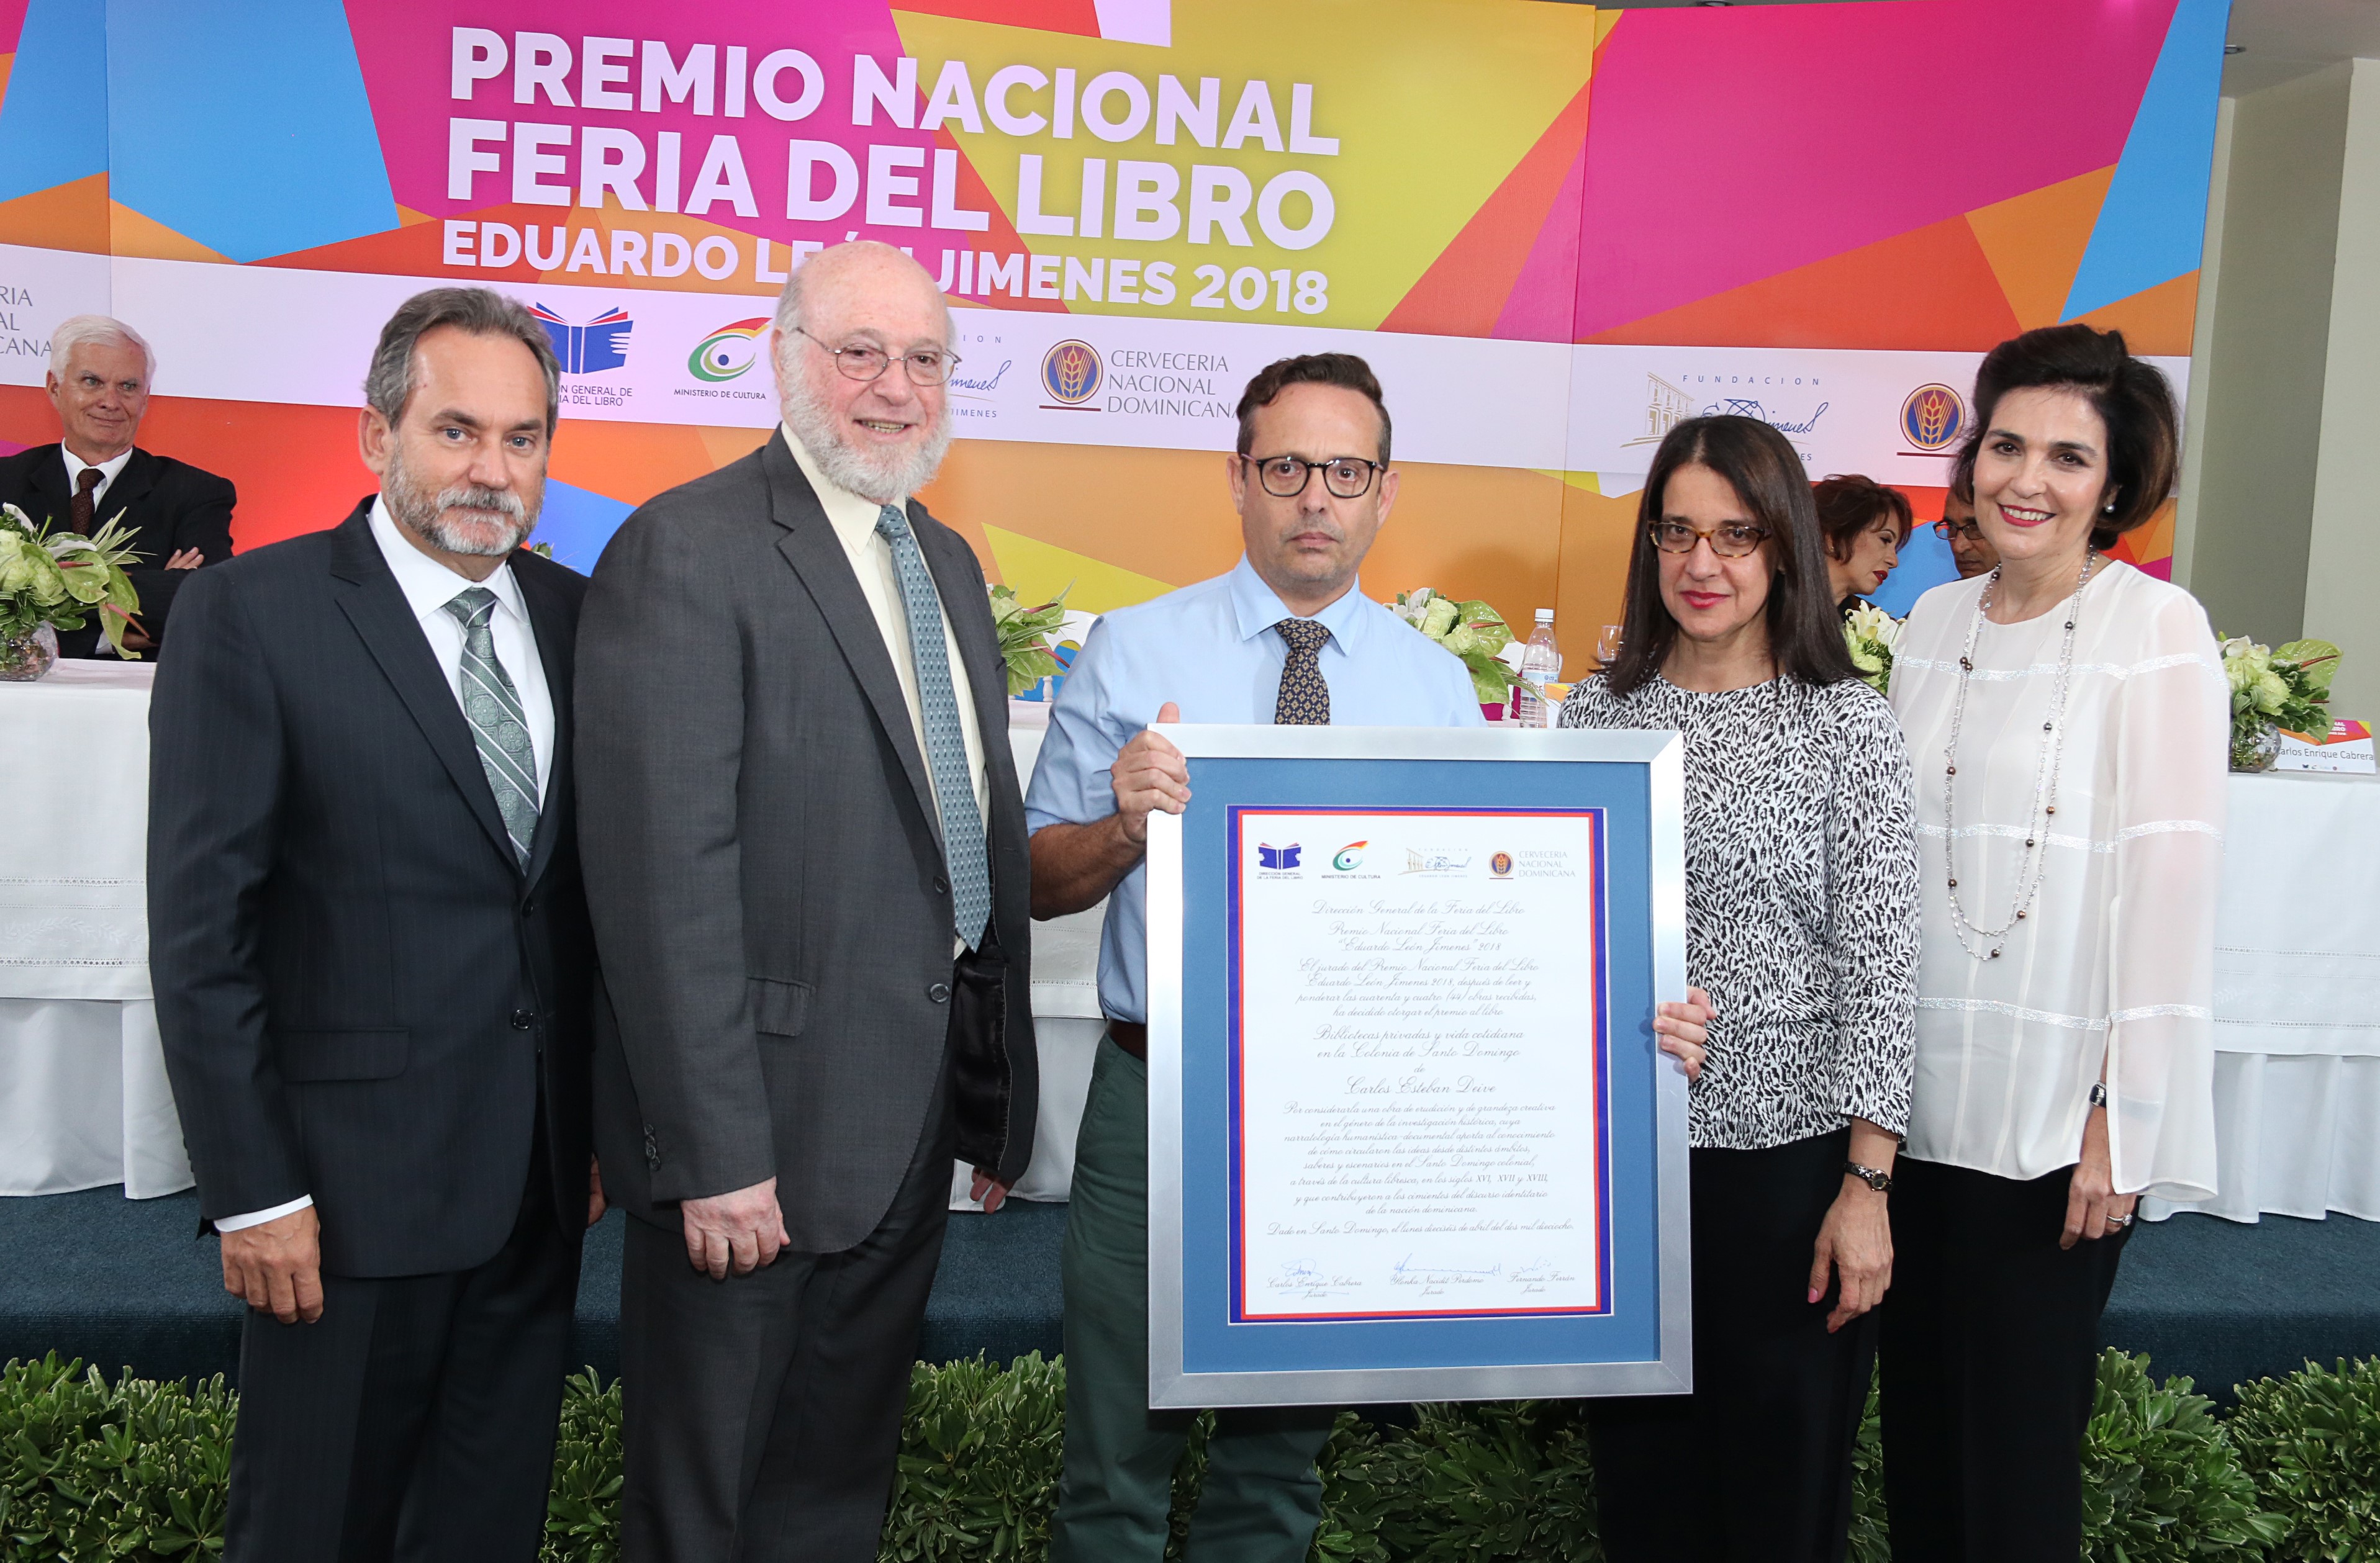 El reconocimiento fue recibido por Leopoldo Deive, hijo del ganador del Premio Nacional Feria del Libro Eduardo León JIménez, Carlos Esteban Deive.